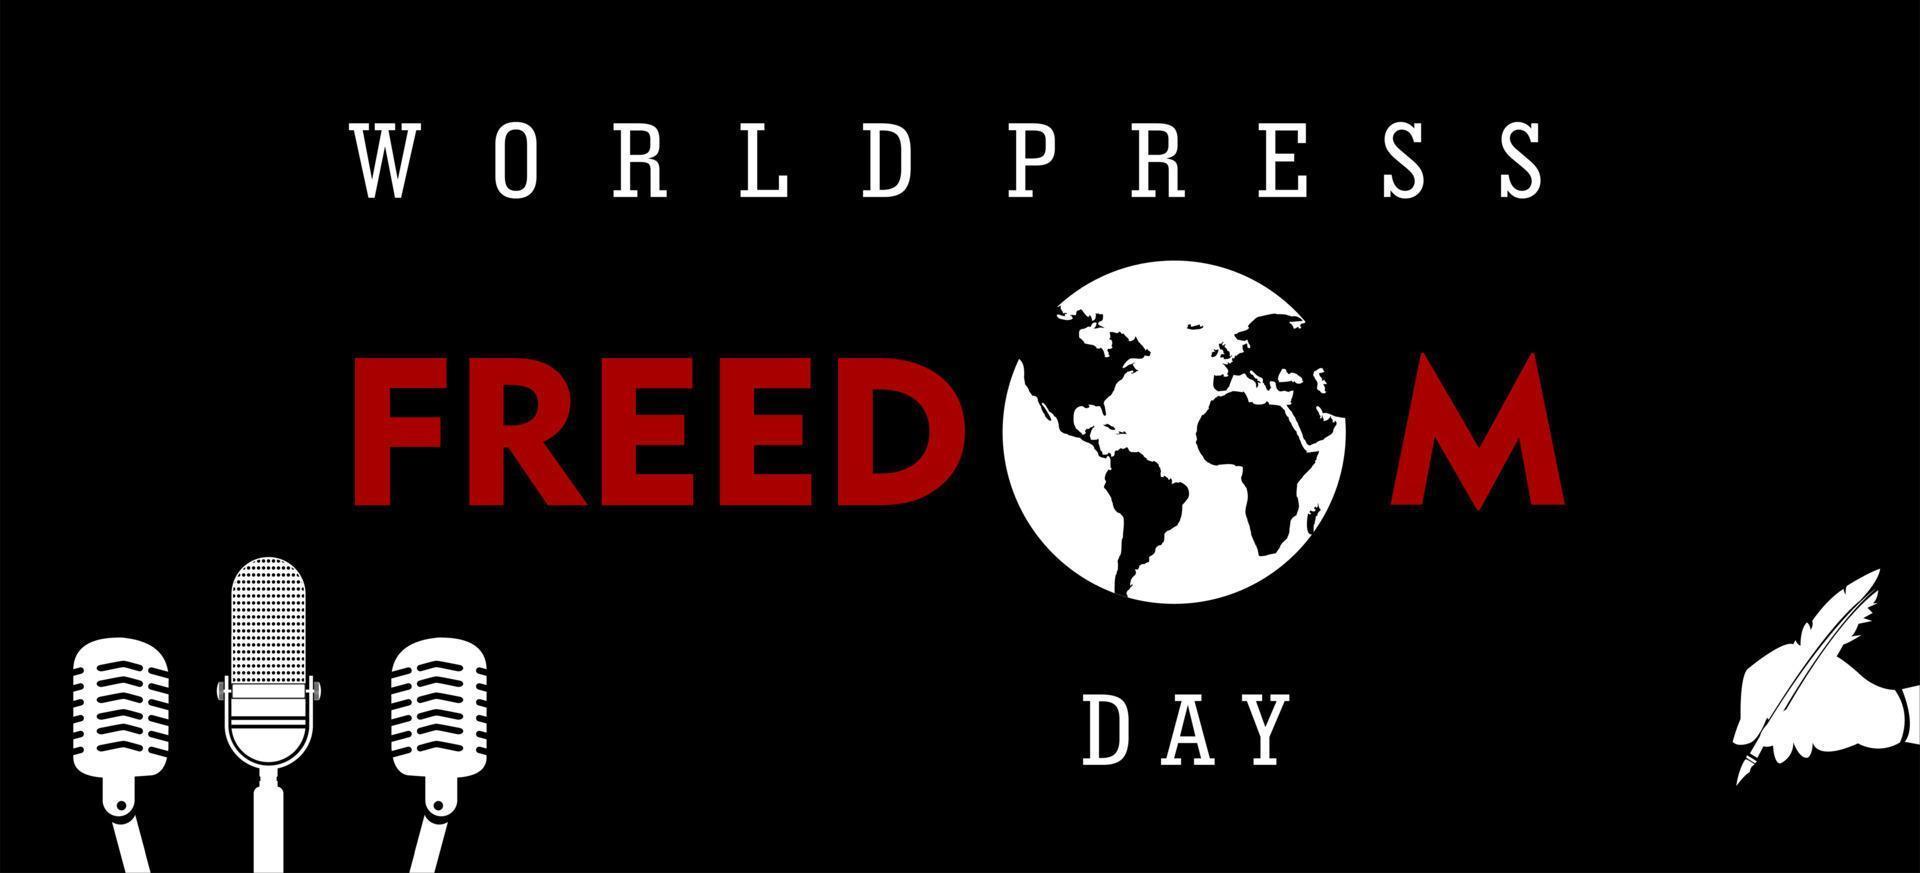 dia mundial da liberdade de imprensa, 3 de maio, ilustração vetorial e texto, design simples vetor